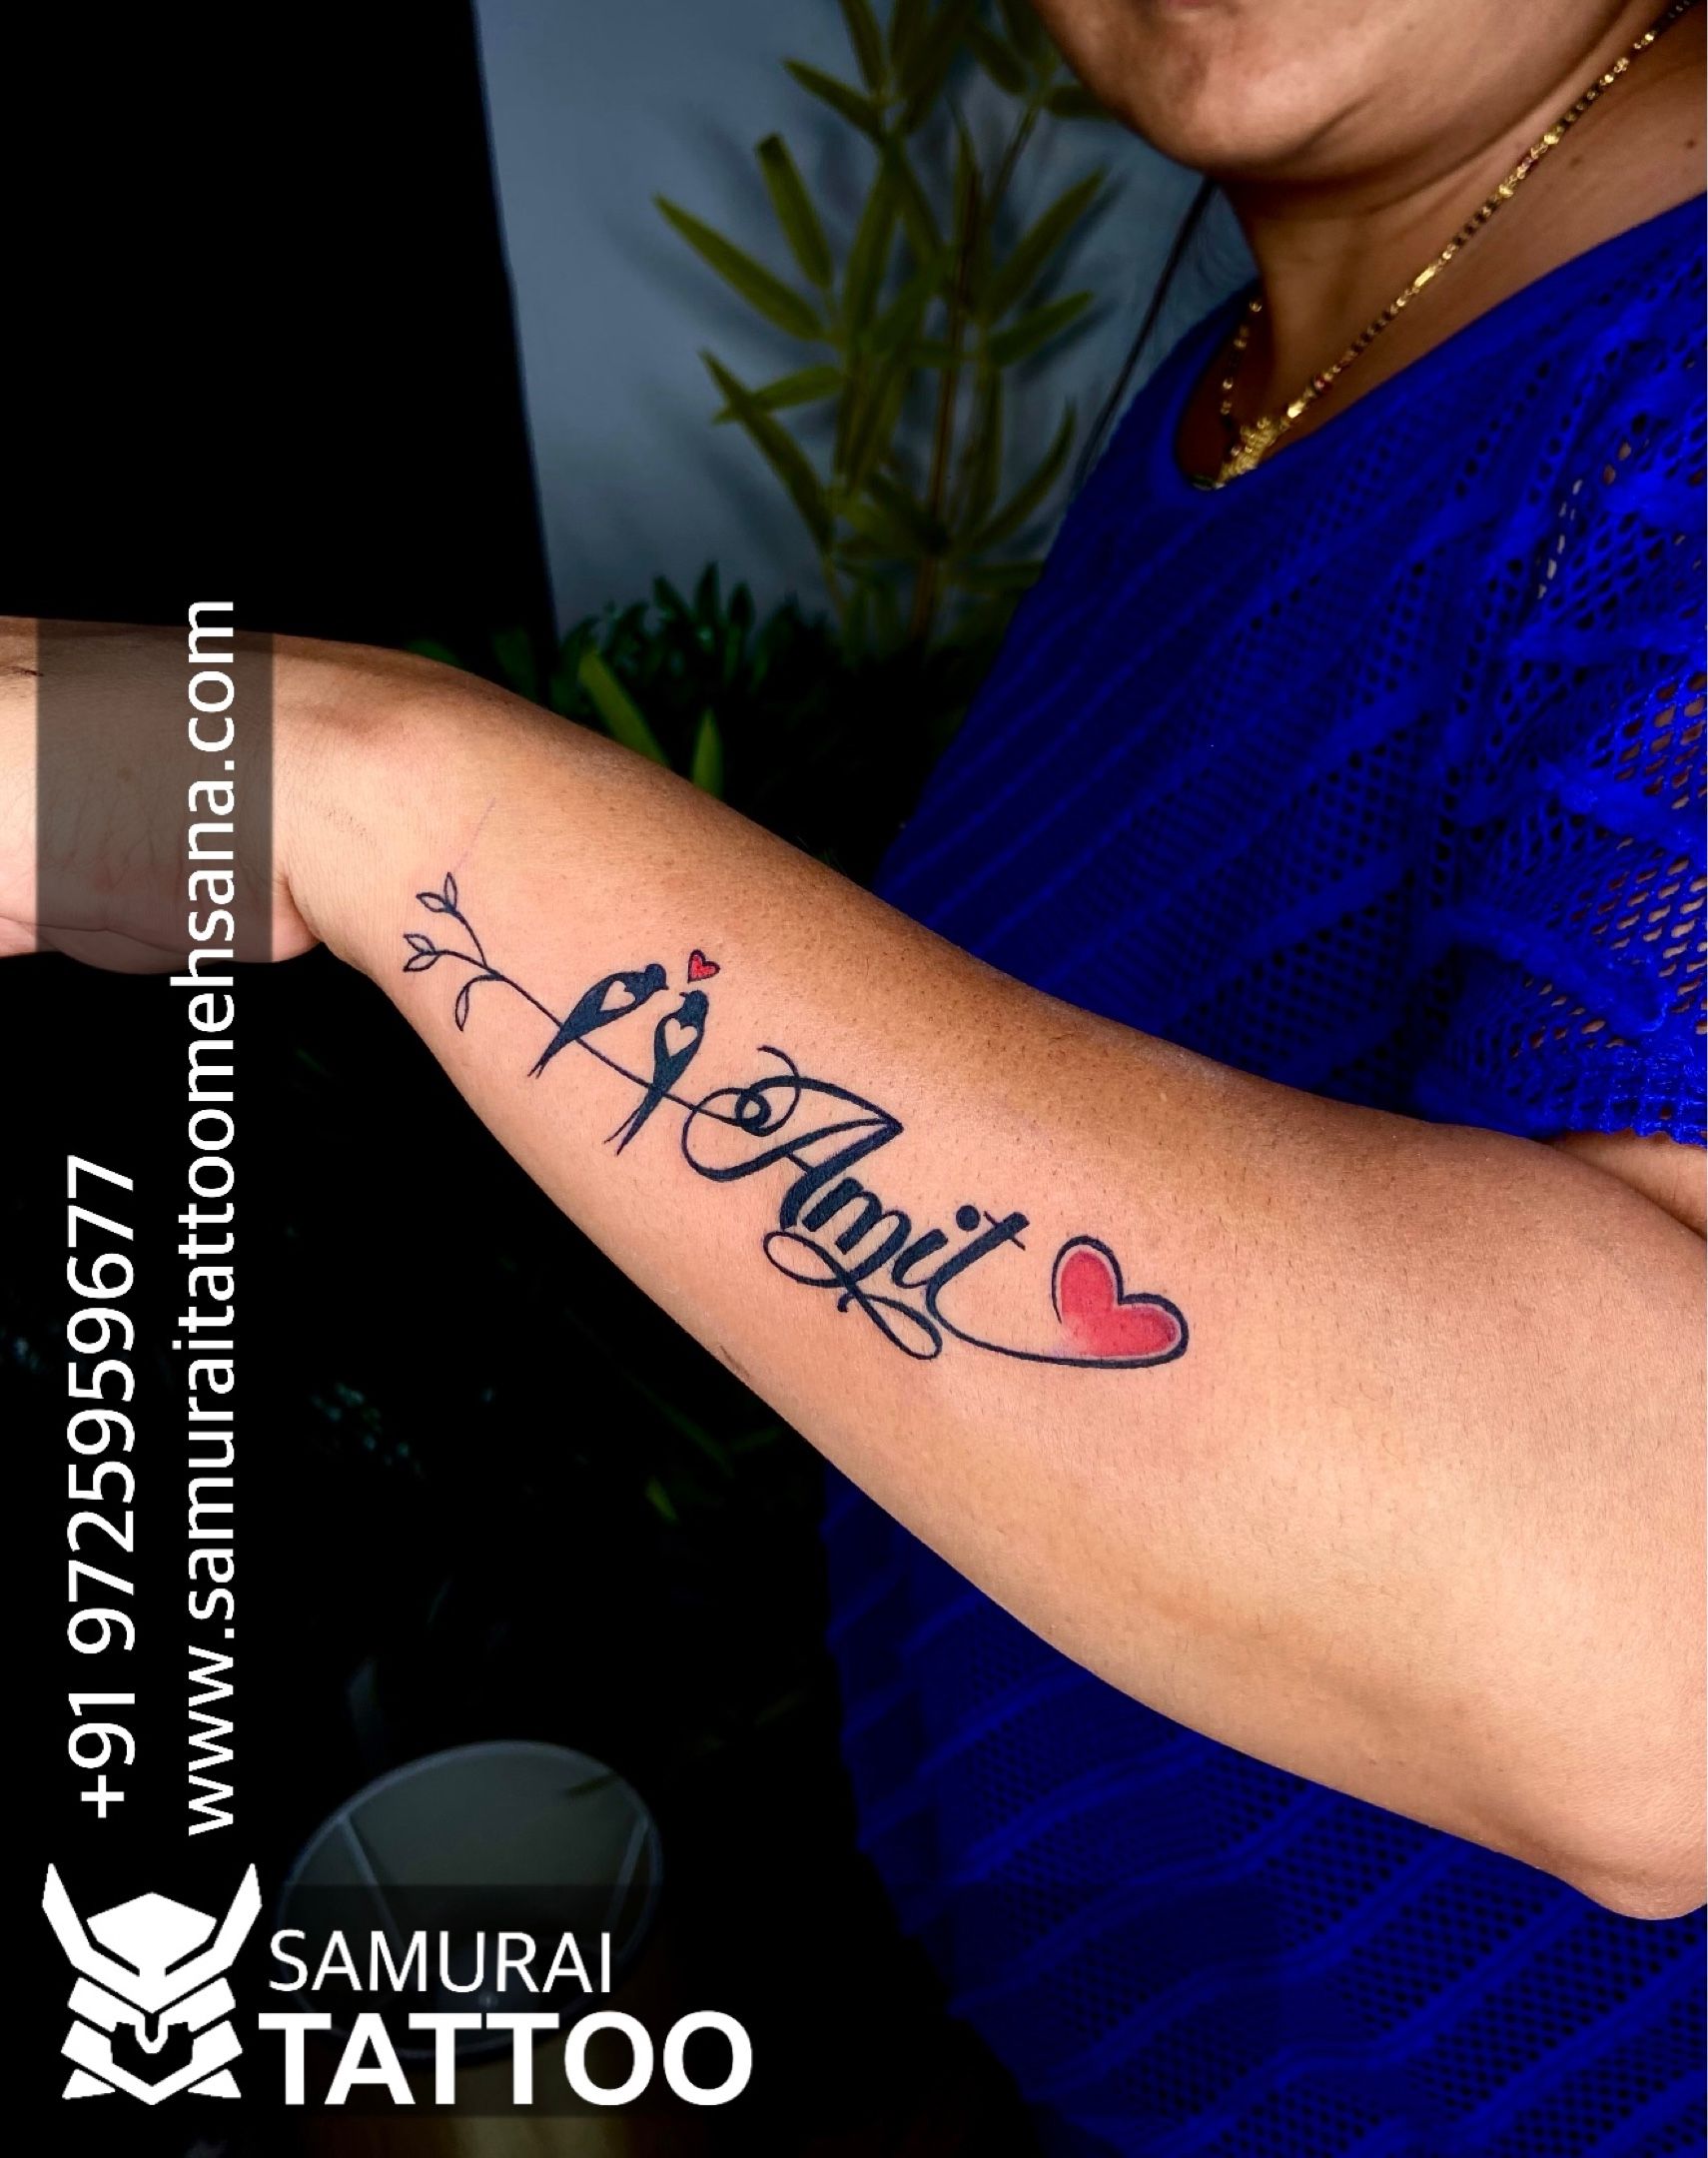 Name tattoo  name tattoo with heart   Heart tattoos with names Cool  wrist tattoos Name tattoos